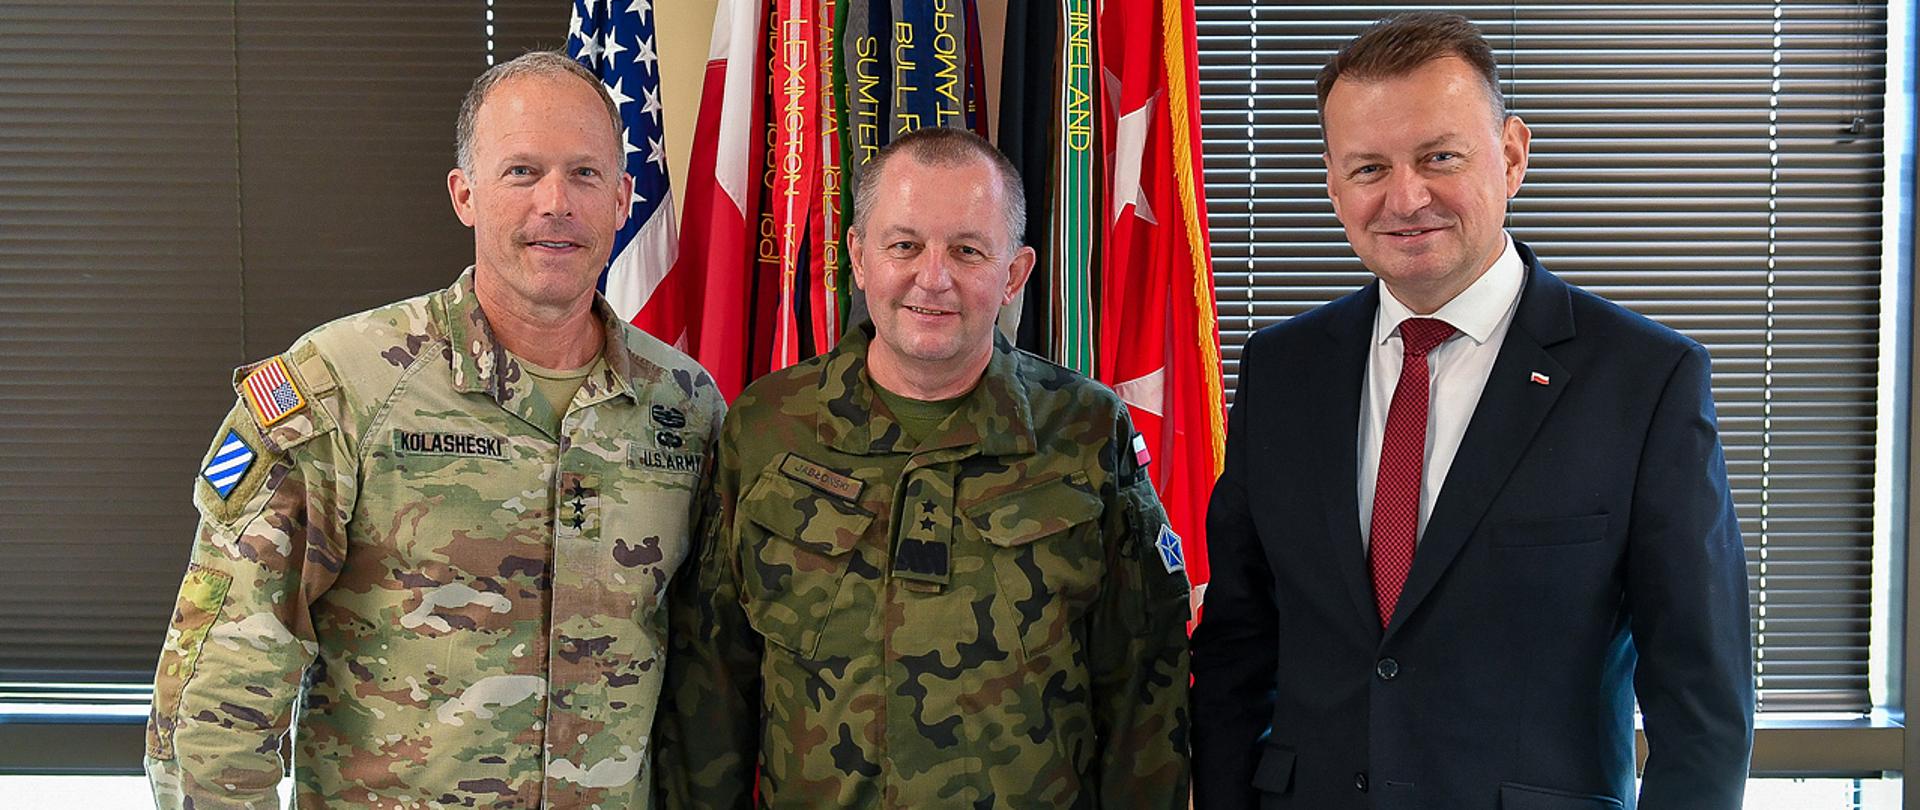 W dniach 17-18 lipca br. Mariusz Błaszczak, minister obrony narodowej przebywał z wizytą w Stanach Zjednoczonych. Fot. Leszek Chemperek/CO MON